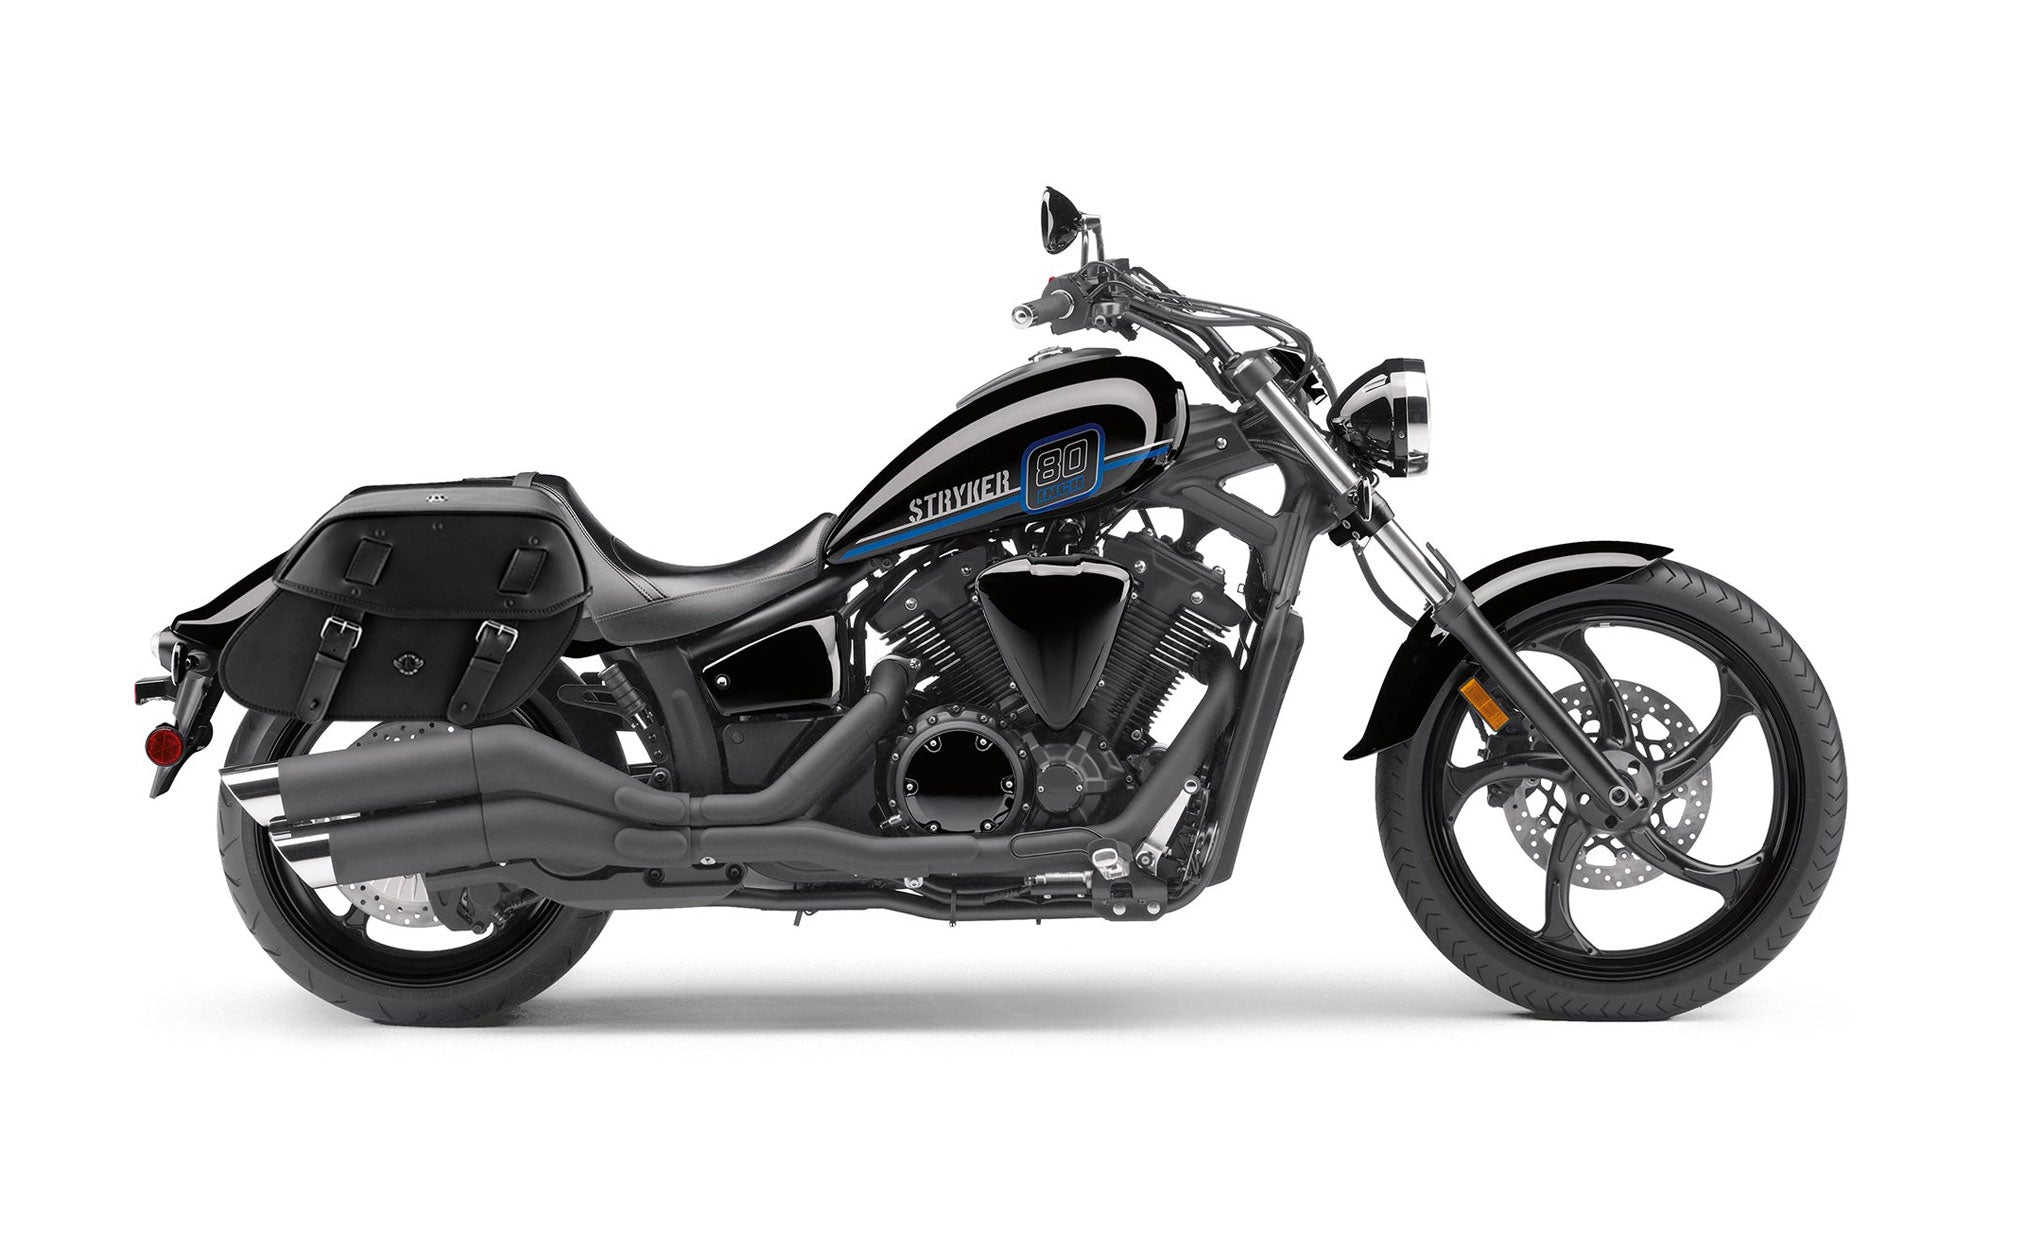 Viking Odin Large Yamaha Stryker Leather Motorcycle Saddlebags on Bike Photo @expand